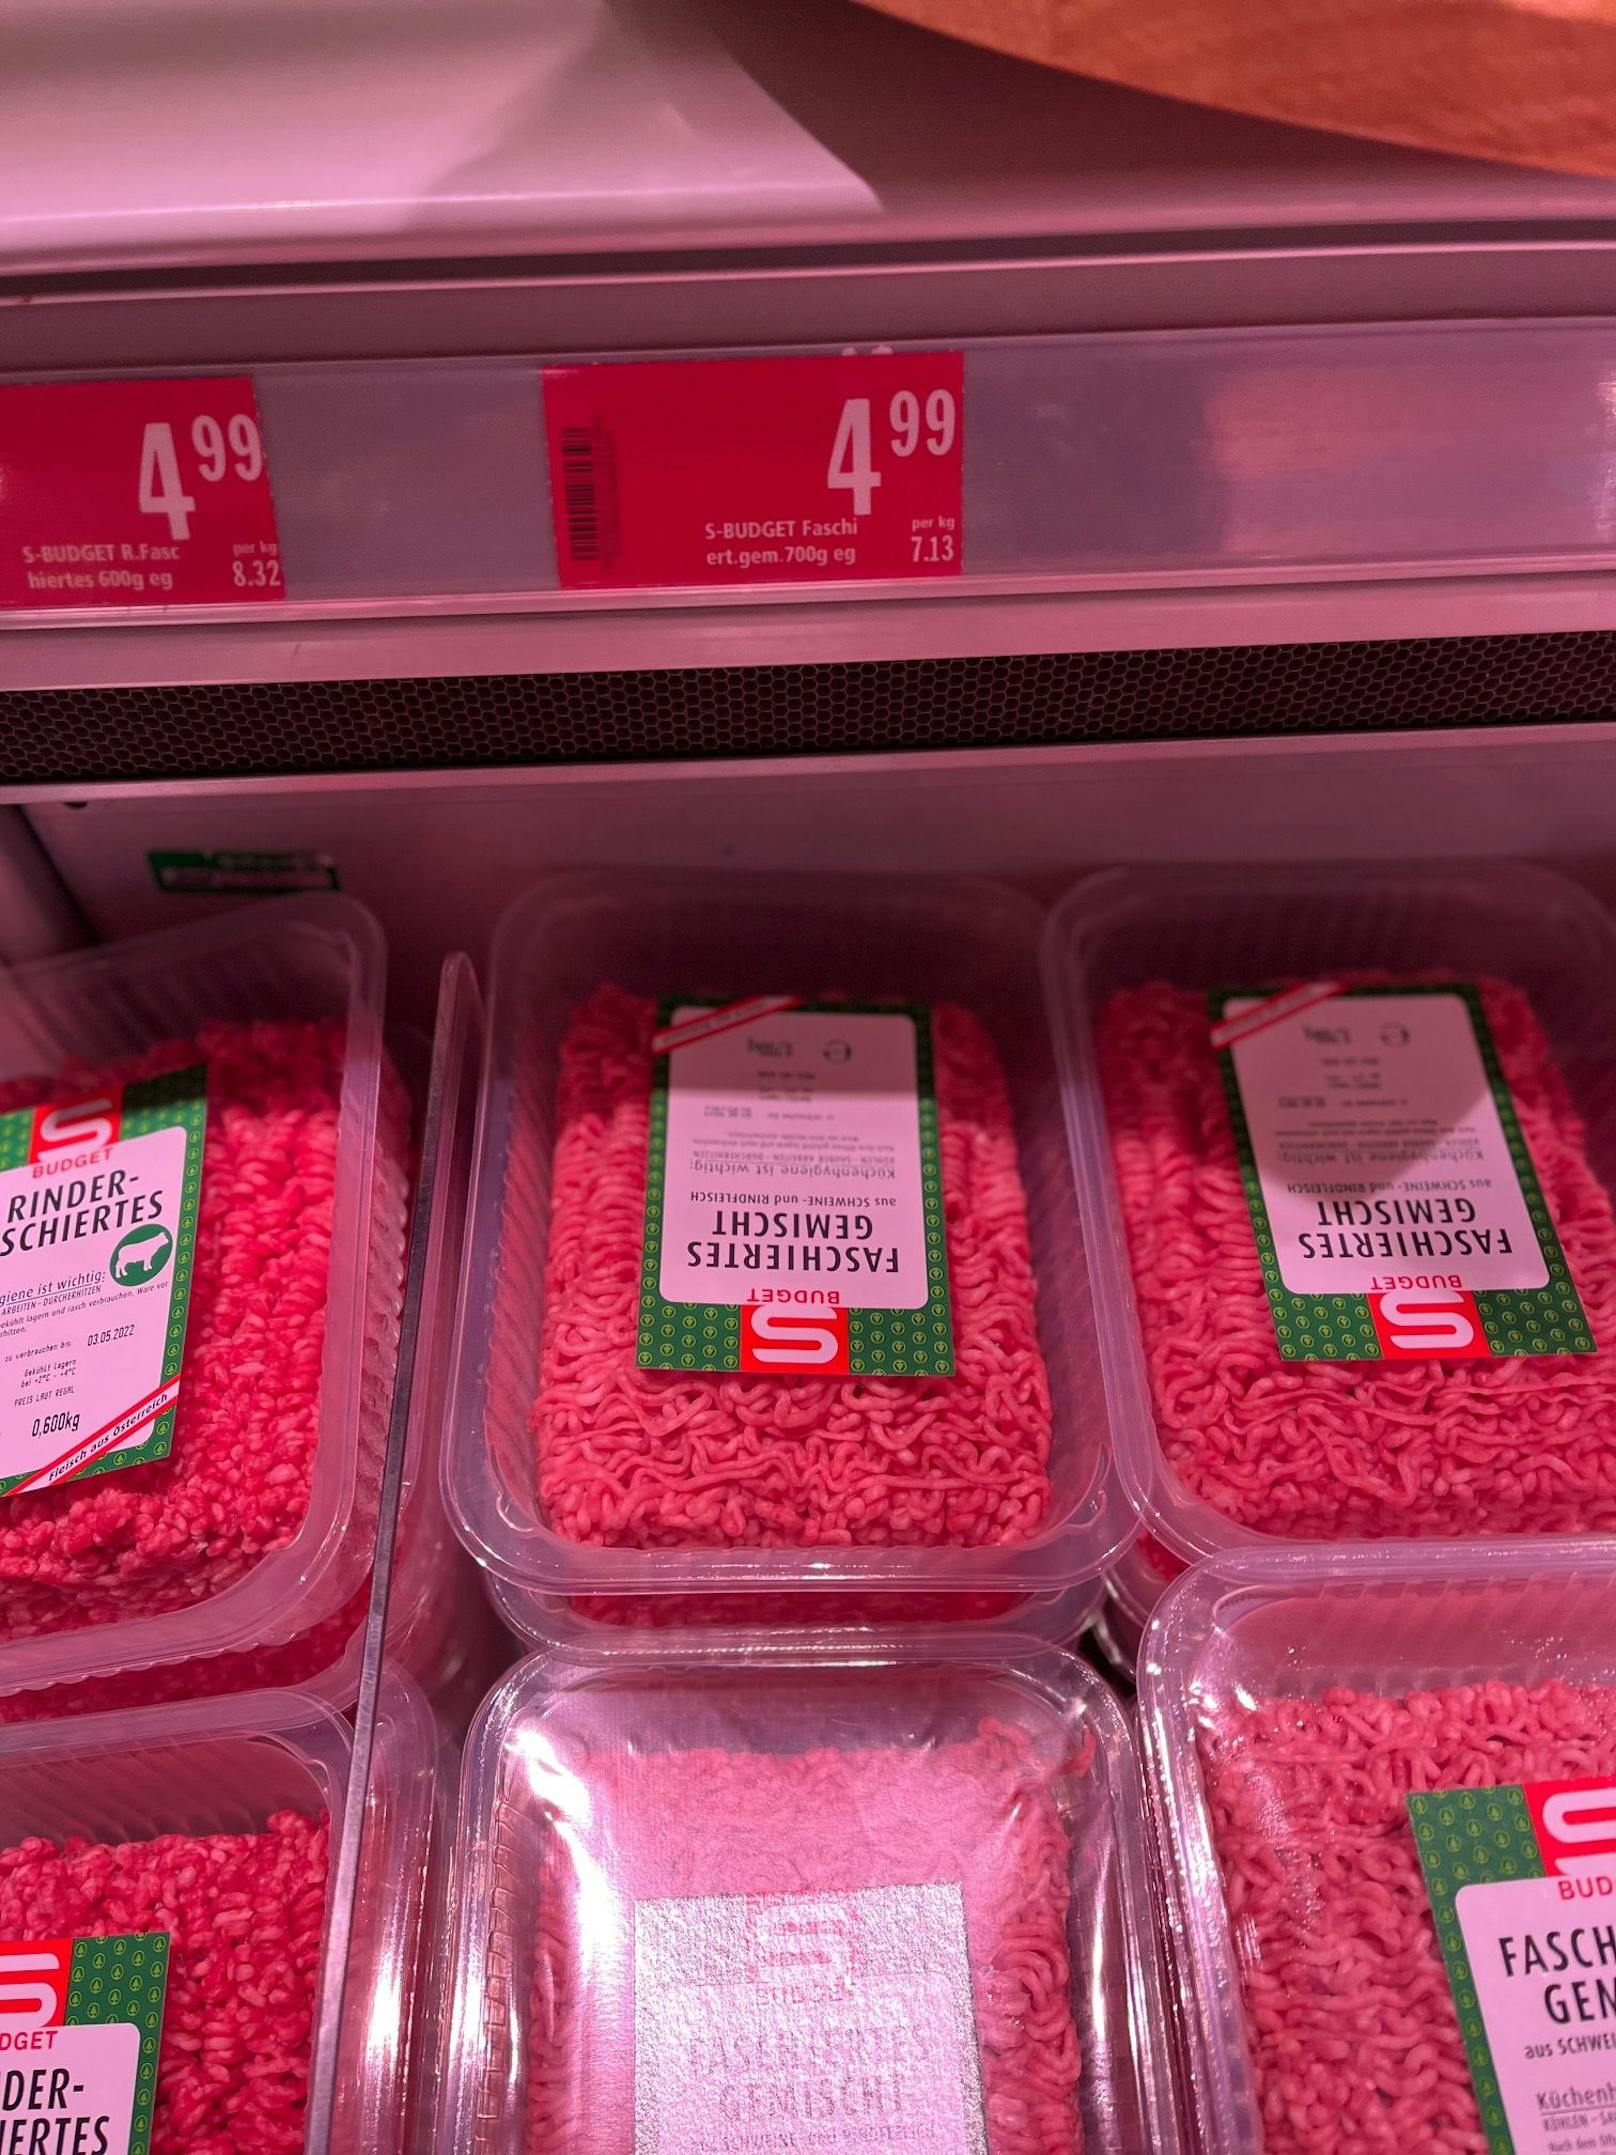 Rindfleisch gemischt, 700 Gramm Billigfleisch kostete vor Wochen 3,99 Euro: Jetzt 4,99 Euro; ein plus von 25,1 Prozent